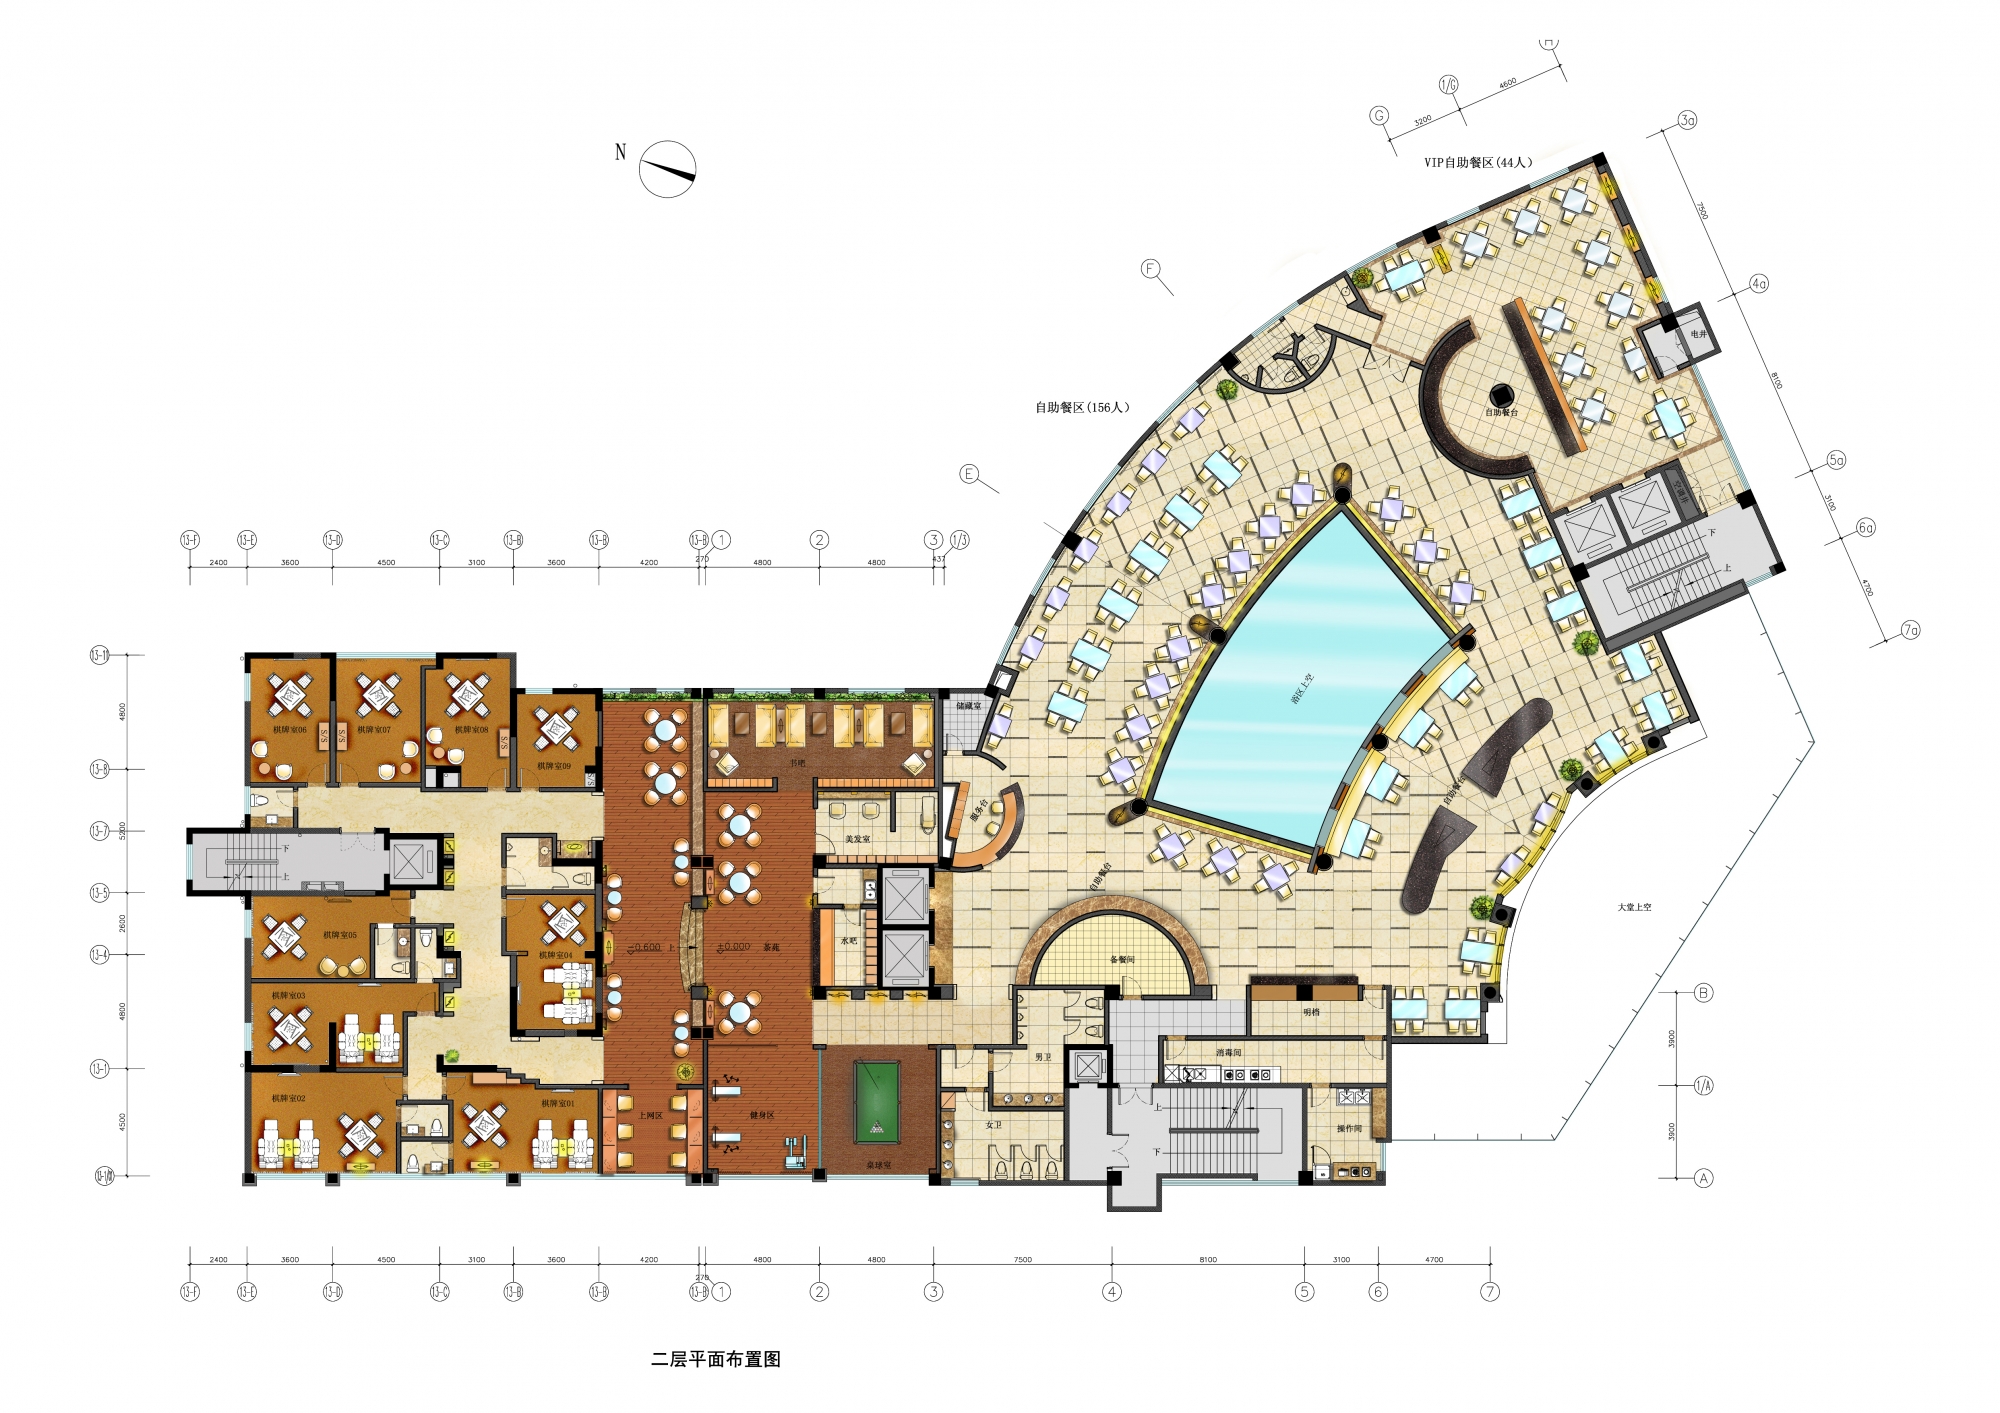 设计及施工图的一个水疗会所,整体方案结合建筑本身的扇形平面展开